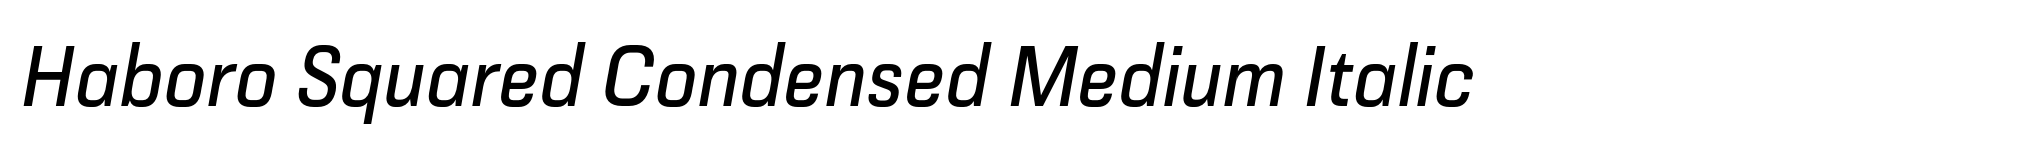 Haboro Squared Condensed Medium Italic image